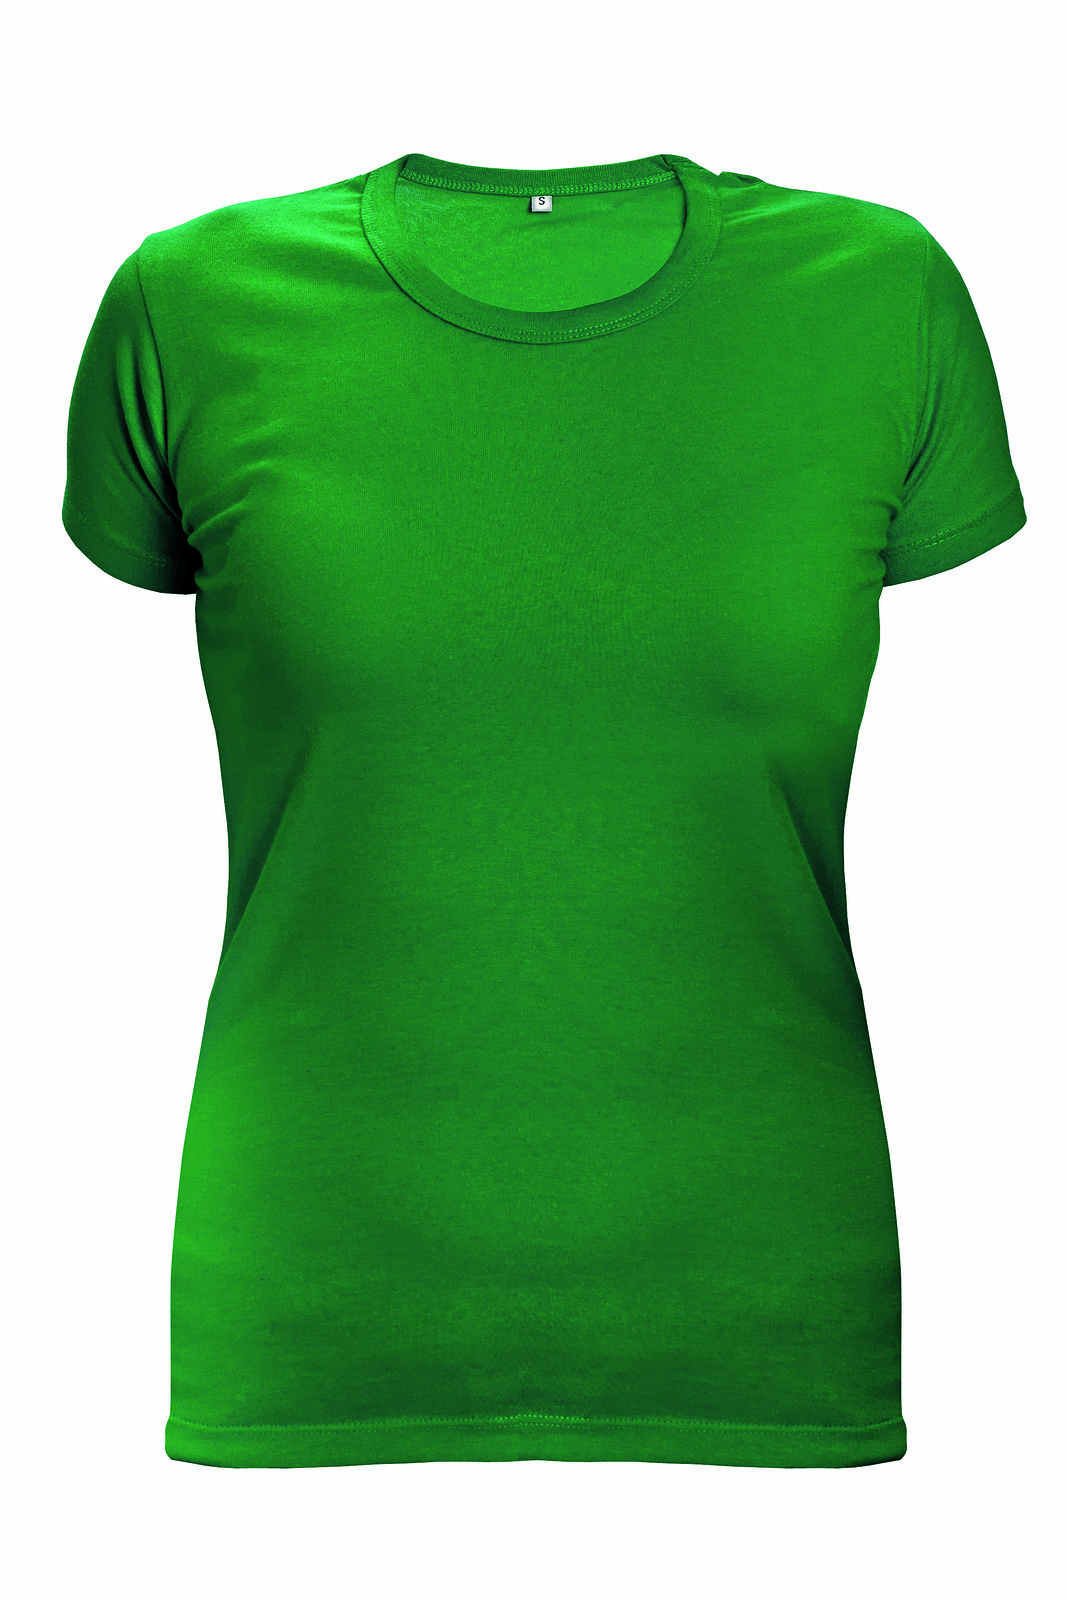 Dámske tričko s krátkym rukávom Surma Lady - veľkosť: L, farba: zelená